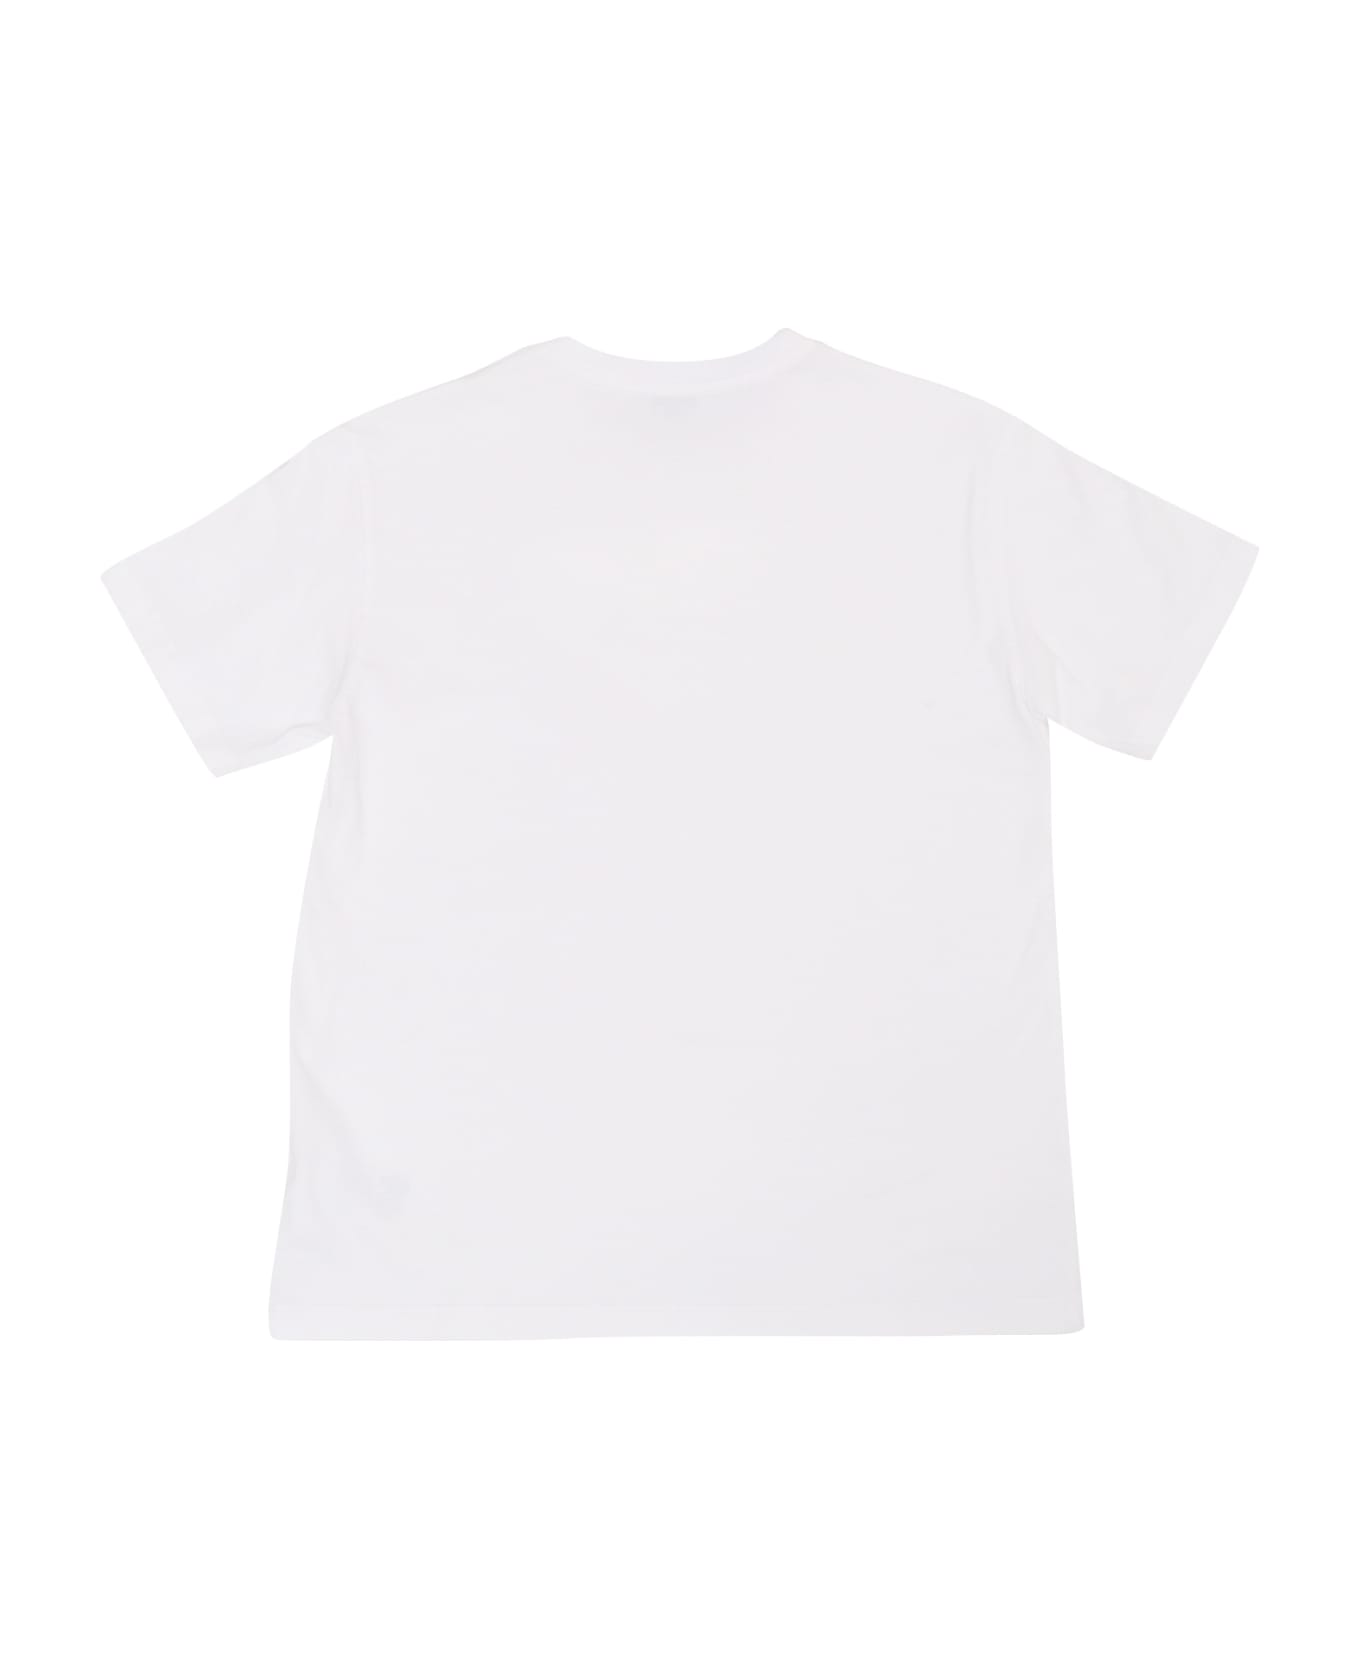 Dolce & Gabbana D&g Children's T-shirt - WHITE Tシャツ＆ポロシャツ